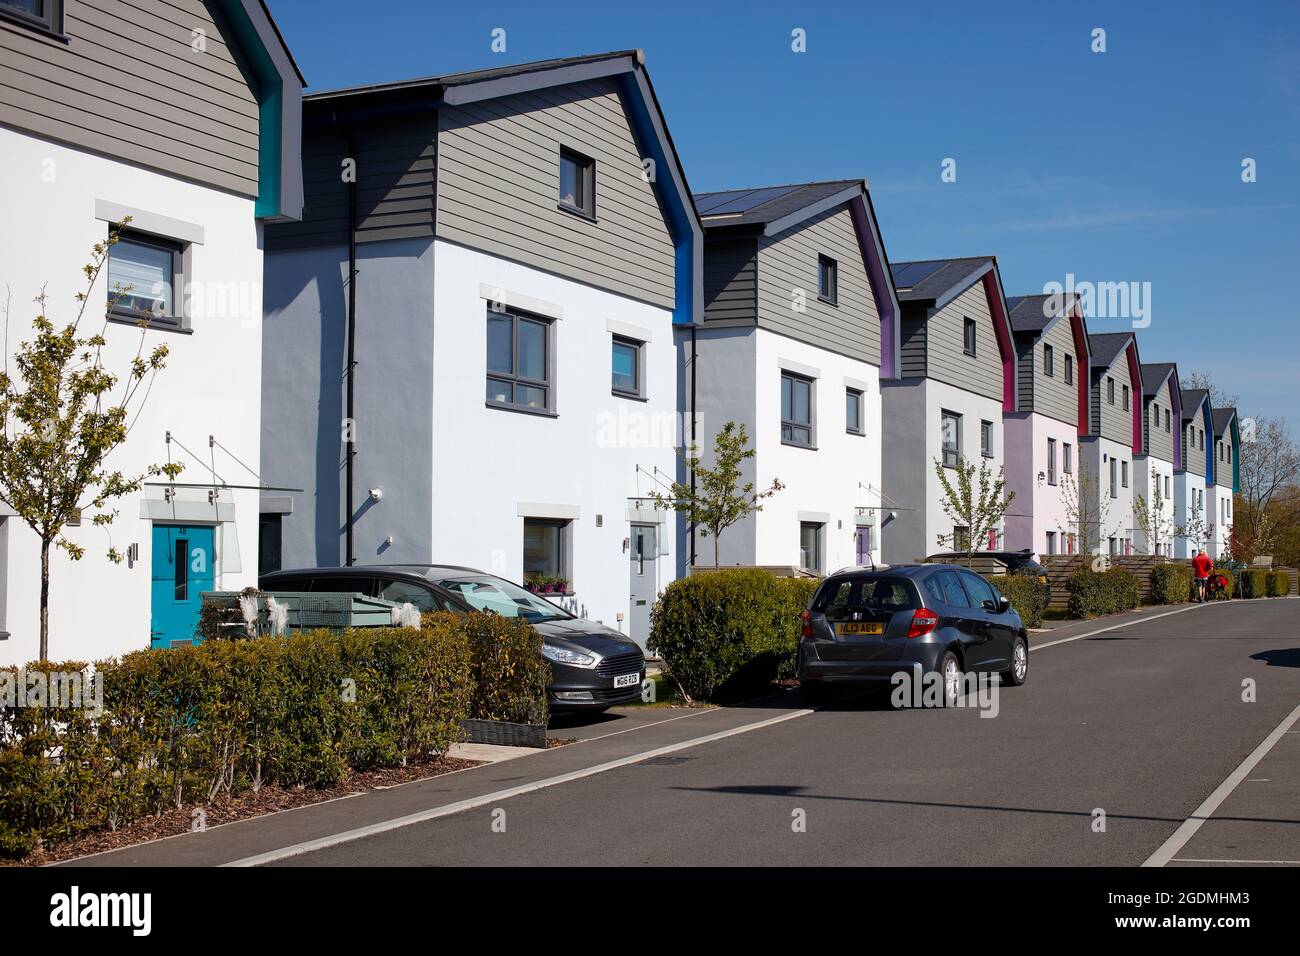 Neuere umweltfreundliche Häuser in einer kleinen Entwicklung in Roborough in der Nähe von Plymouth in Großbritannien. Häuser verfügen über Sonnenkollektoren und eine hohe thermische Effizienz. Stockfoto